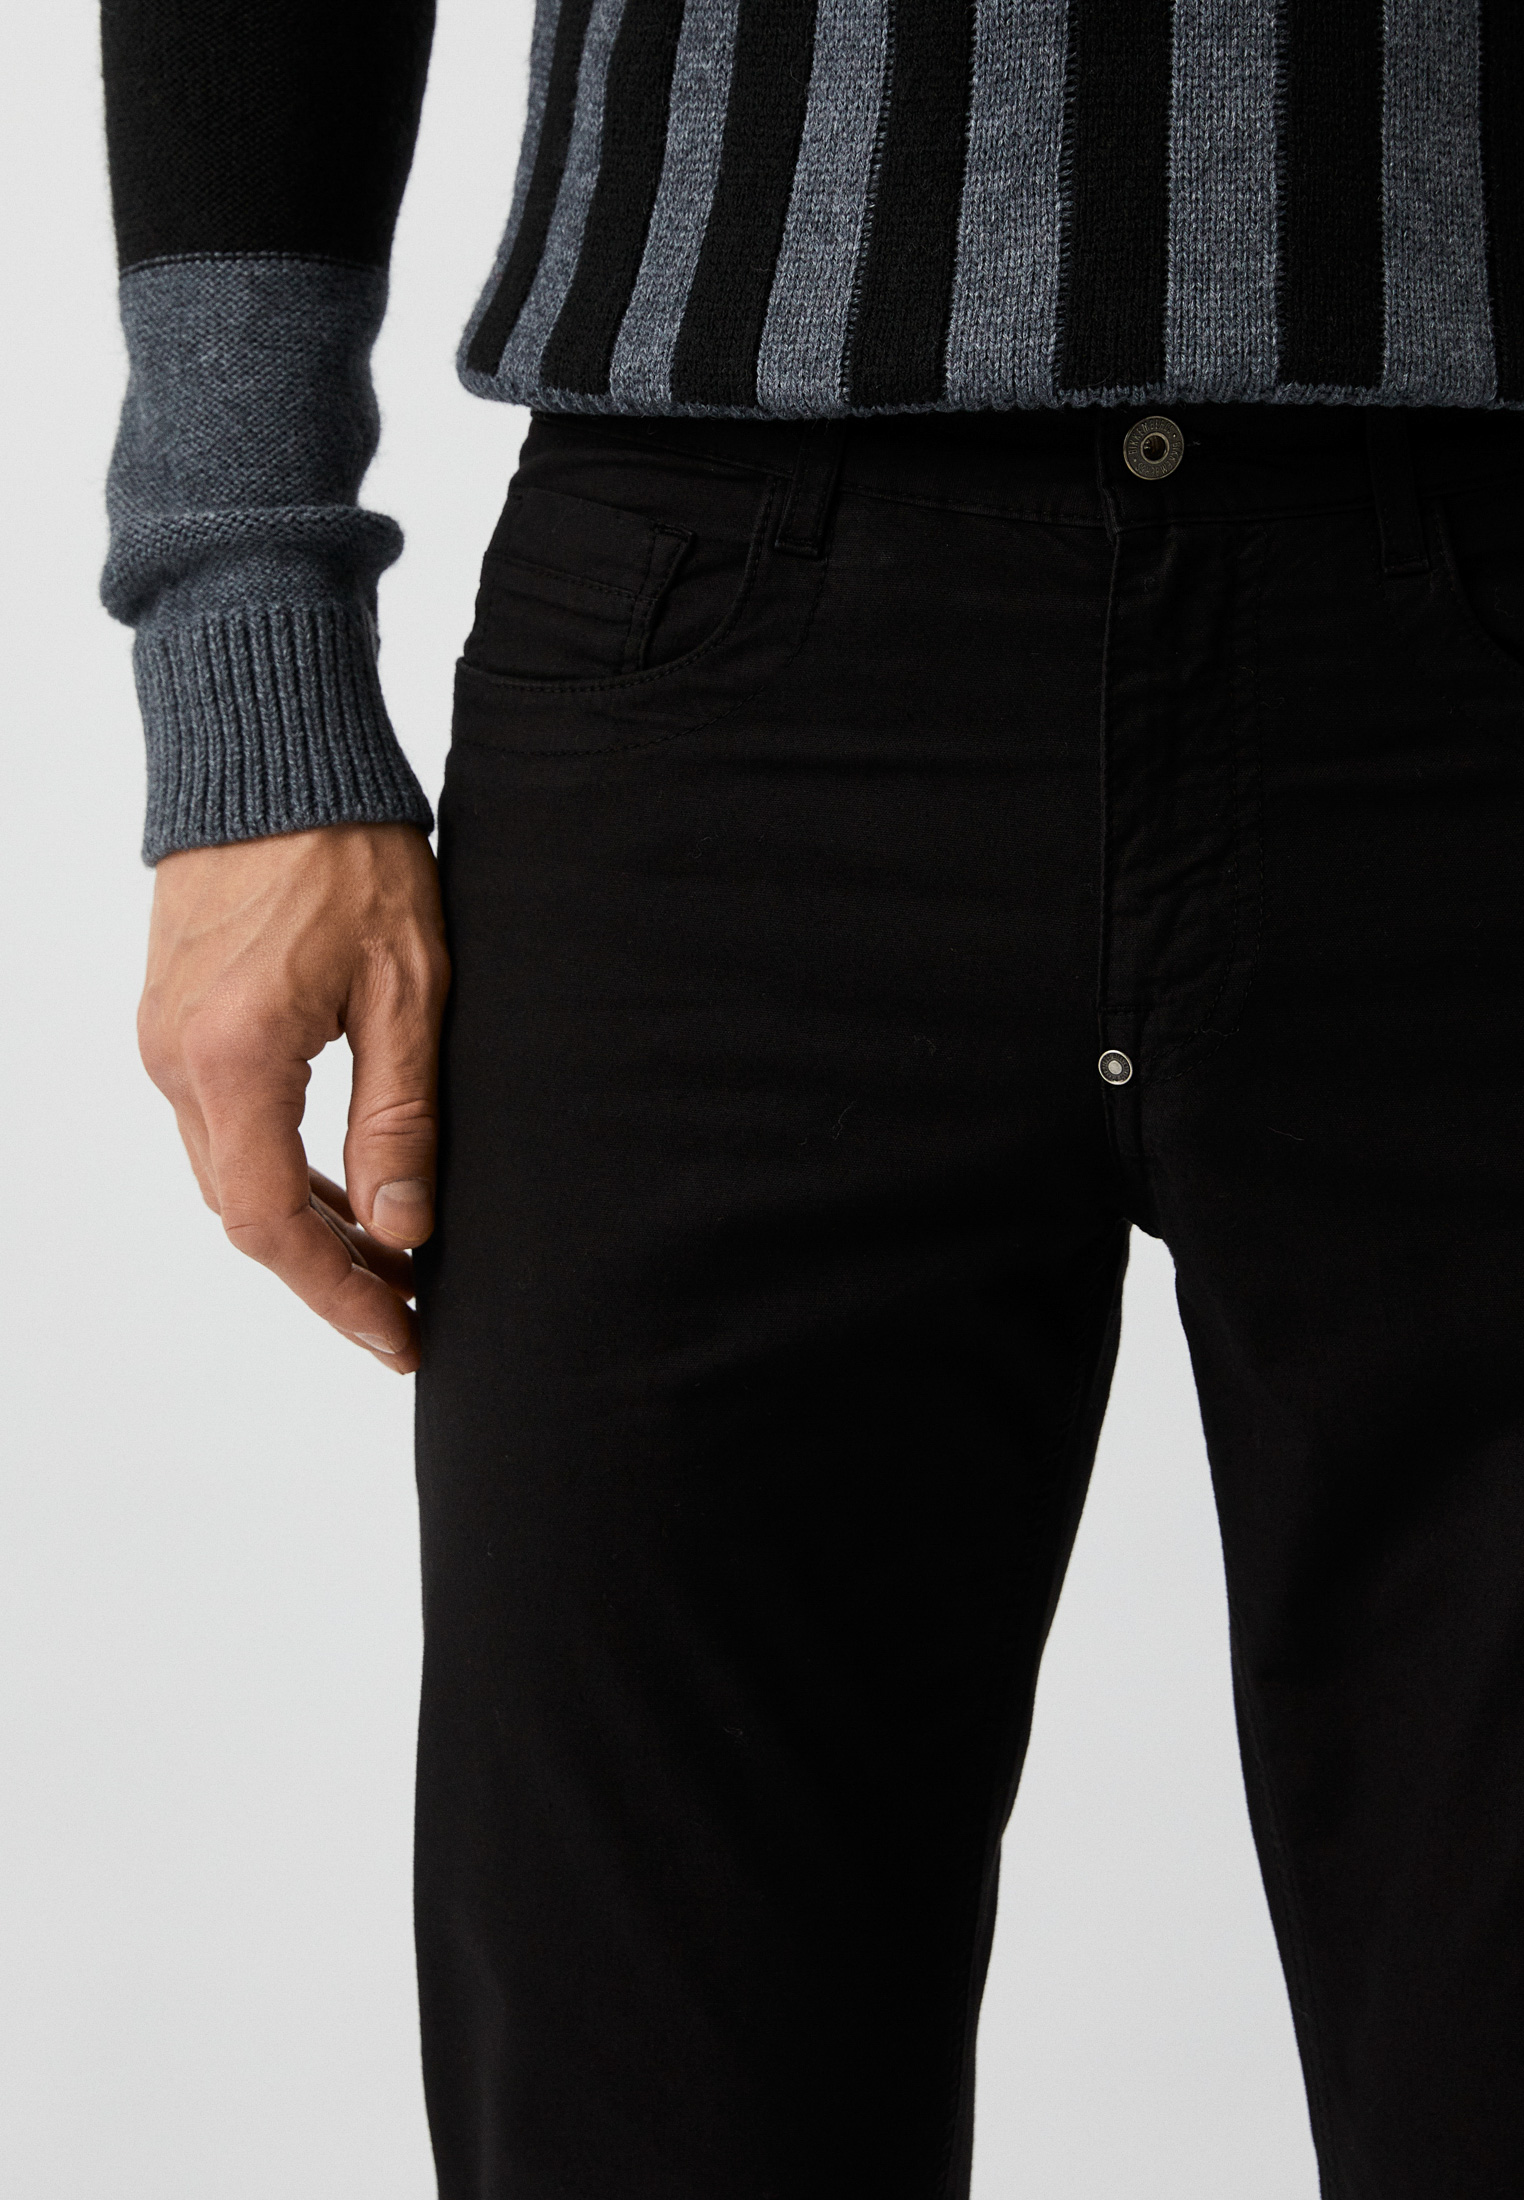 Мужские повседневные брюки Bikkembergs (Биккембергс) C Q 111 01 S 3568: изображение 4